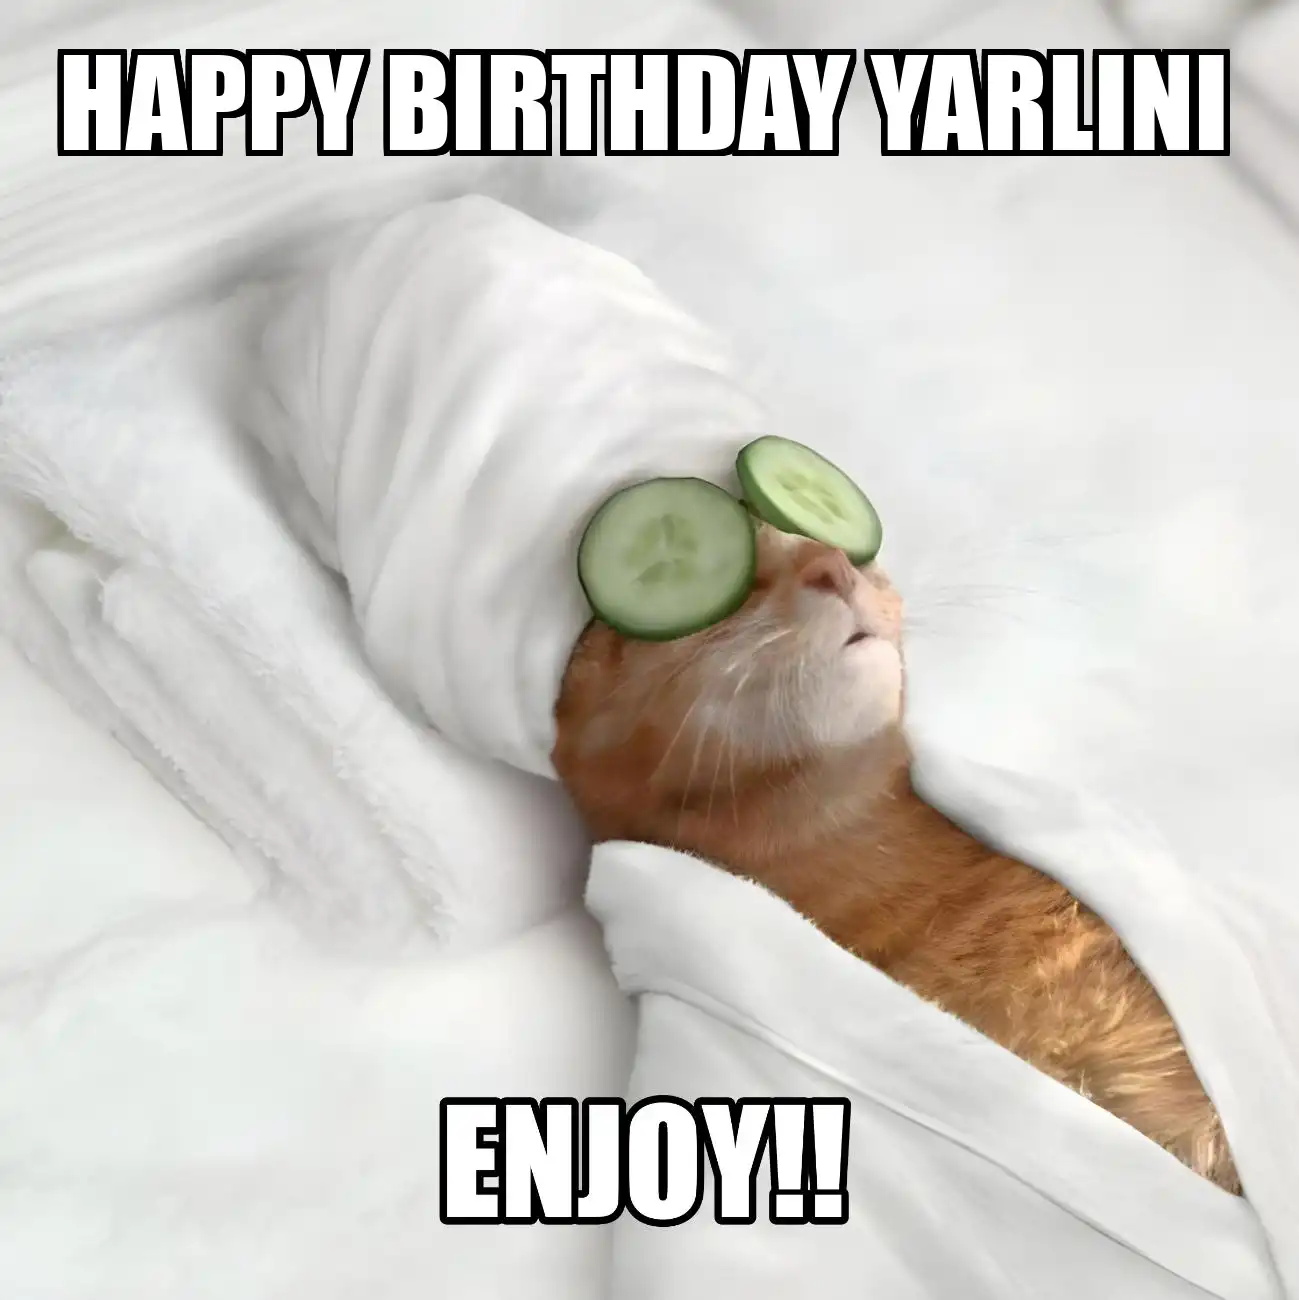 Happy Birthday Yarlini Enjoy Cat Meme